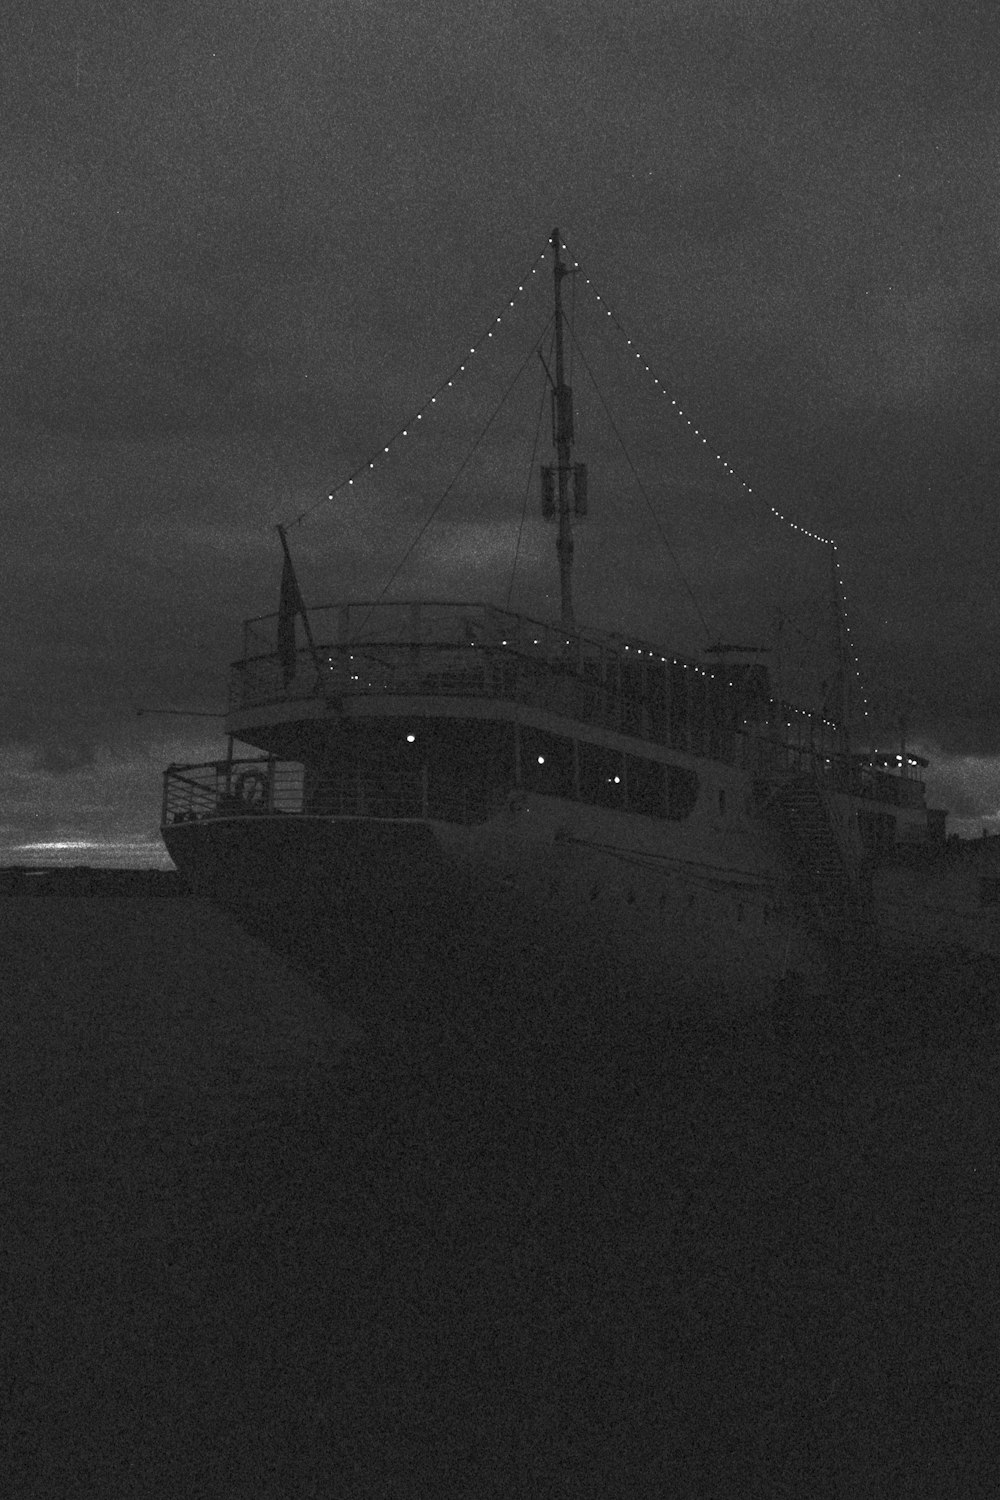 Foto en escala de grises de un barco en el mar